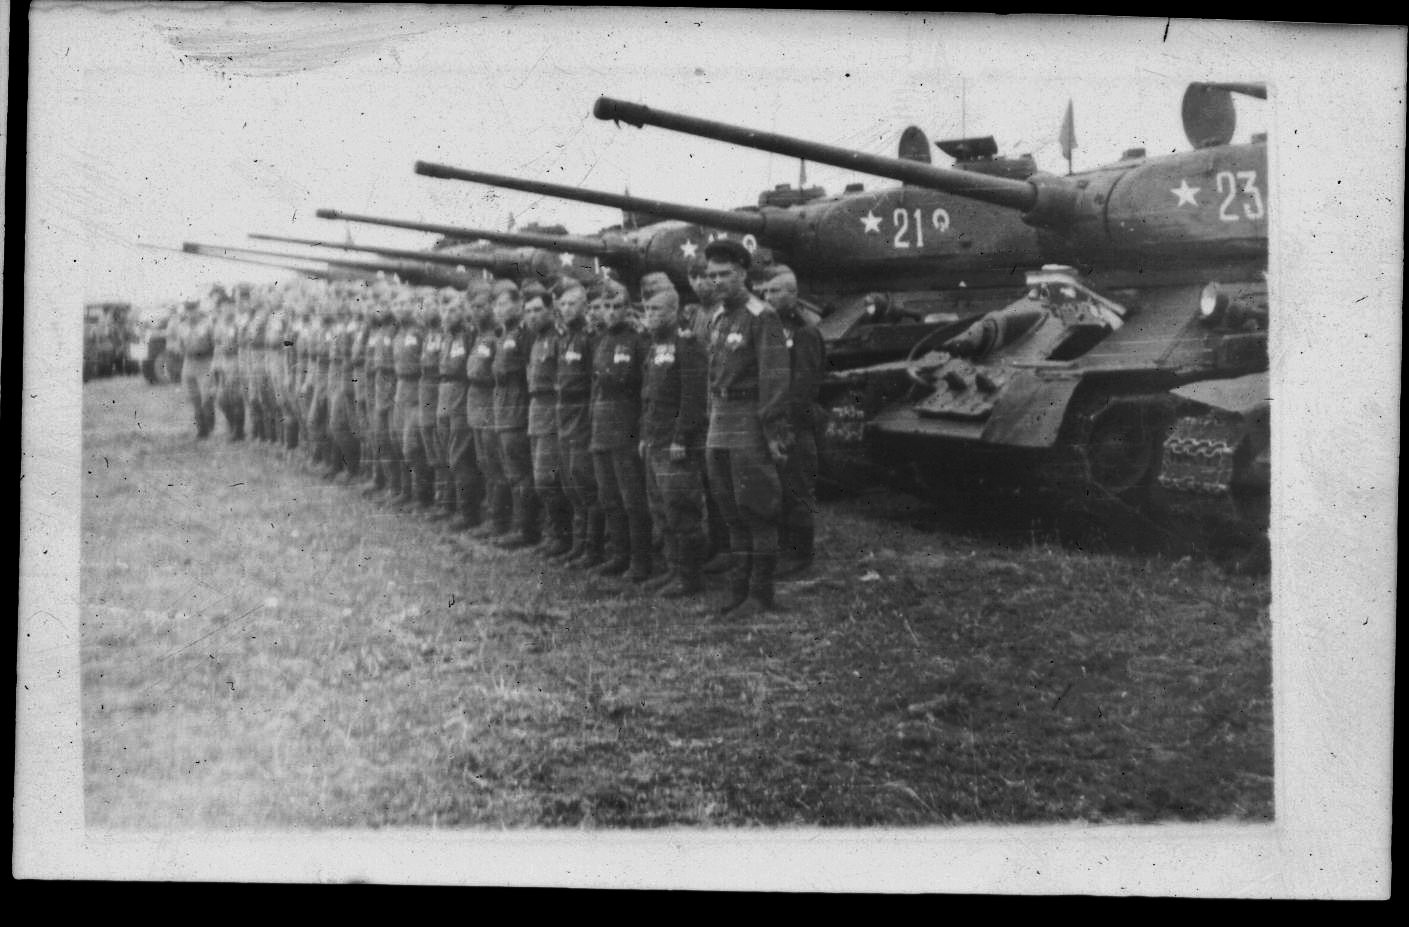 фото 1944 года подразделения 104 танкового полка 5 гв. кав. див. 3-го гв. кав. корпуса на смотре перед очередной операцией